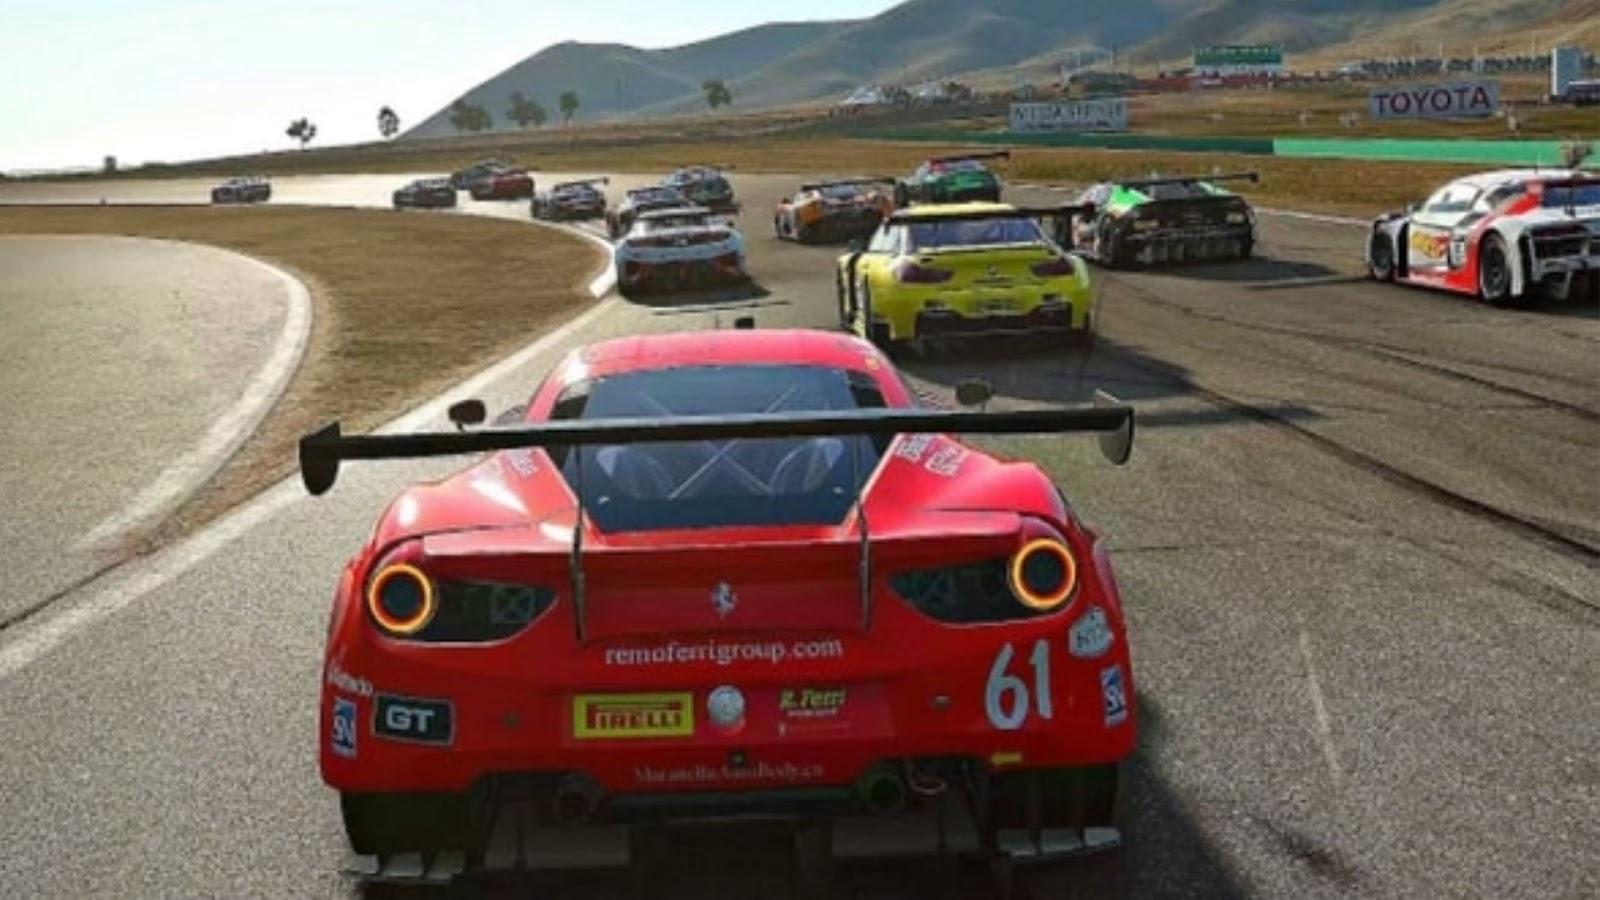 15 Best Free Car Racing Games 2022 - Play Racing Games Online